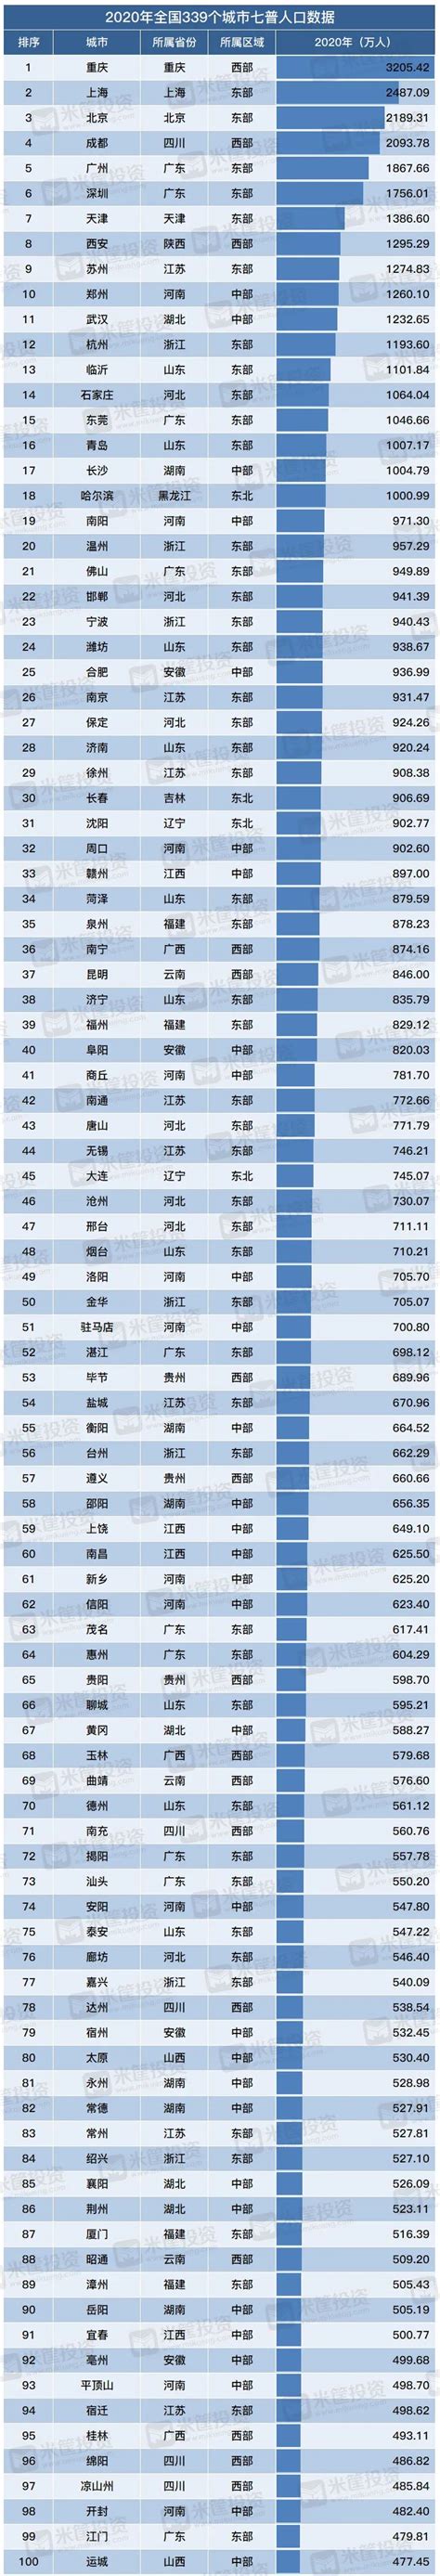 2019年中国城市城区常住人口数量排名TOP50_排行榜